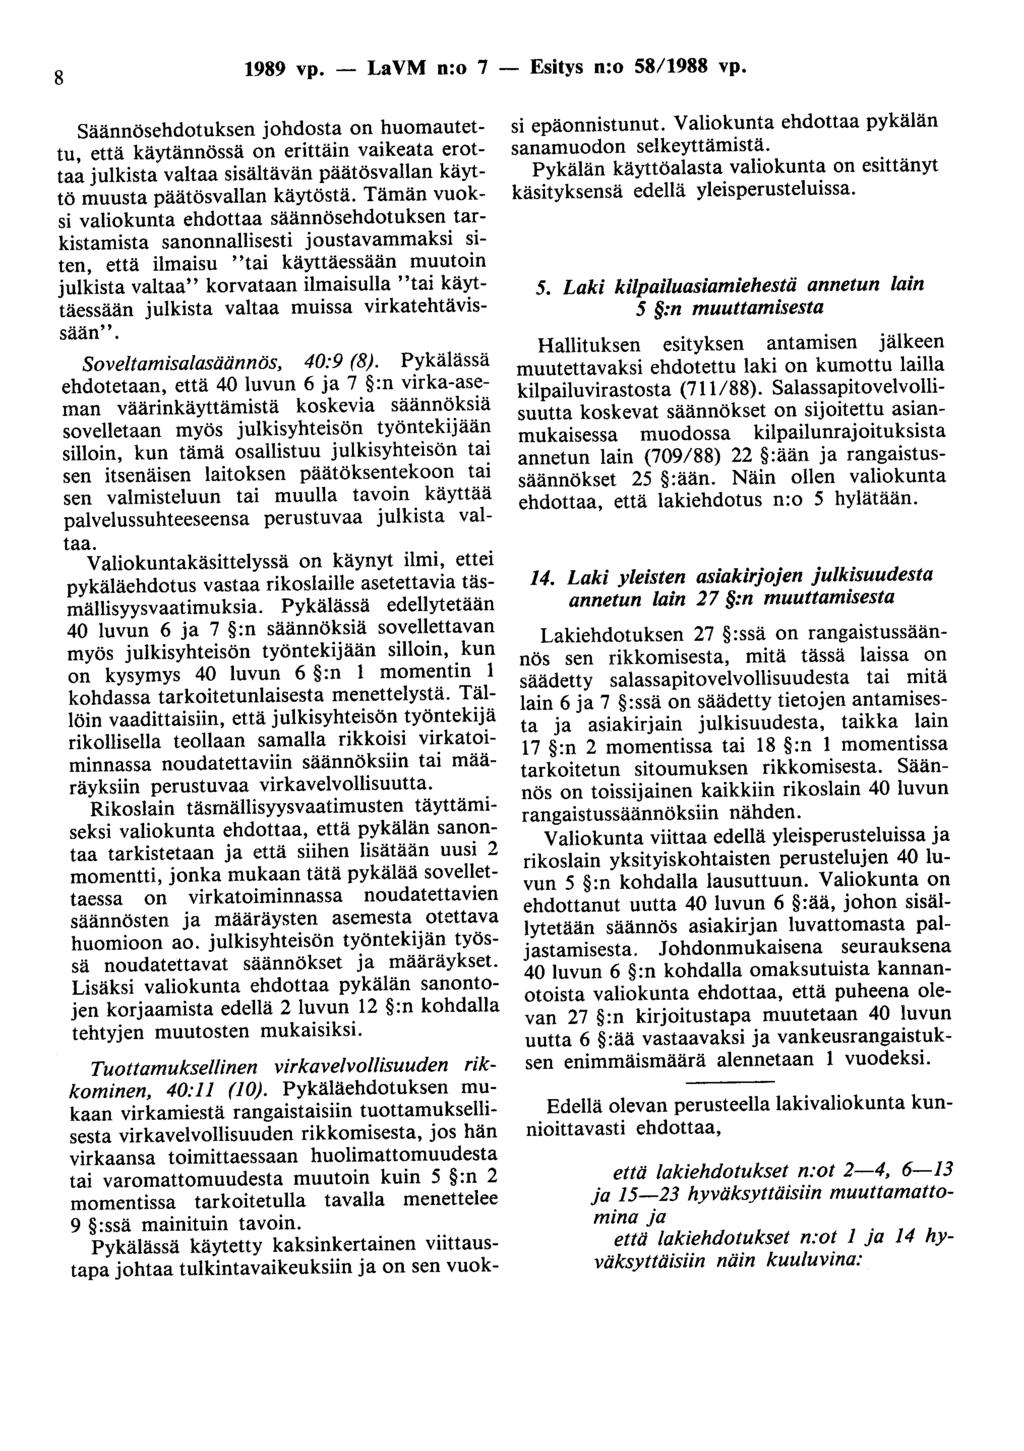 8 1989 vp. - LaVM n:o 7 - Esitys n:o 58/1988 vp.